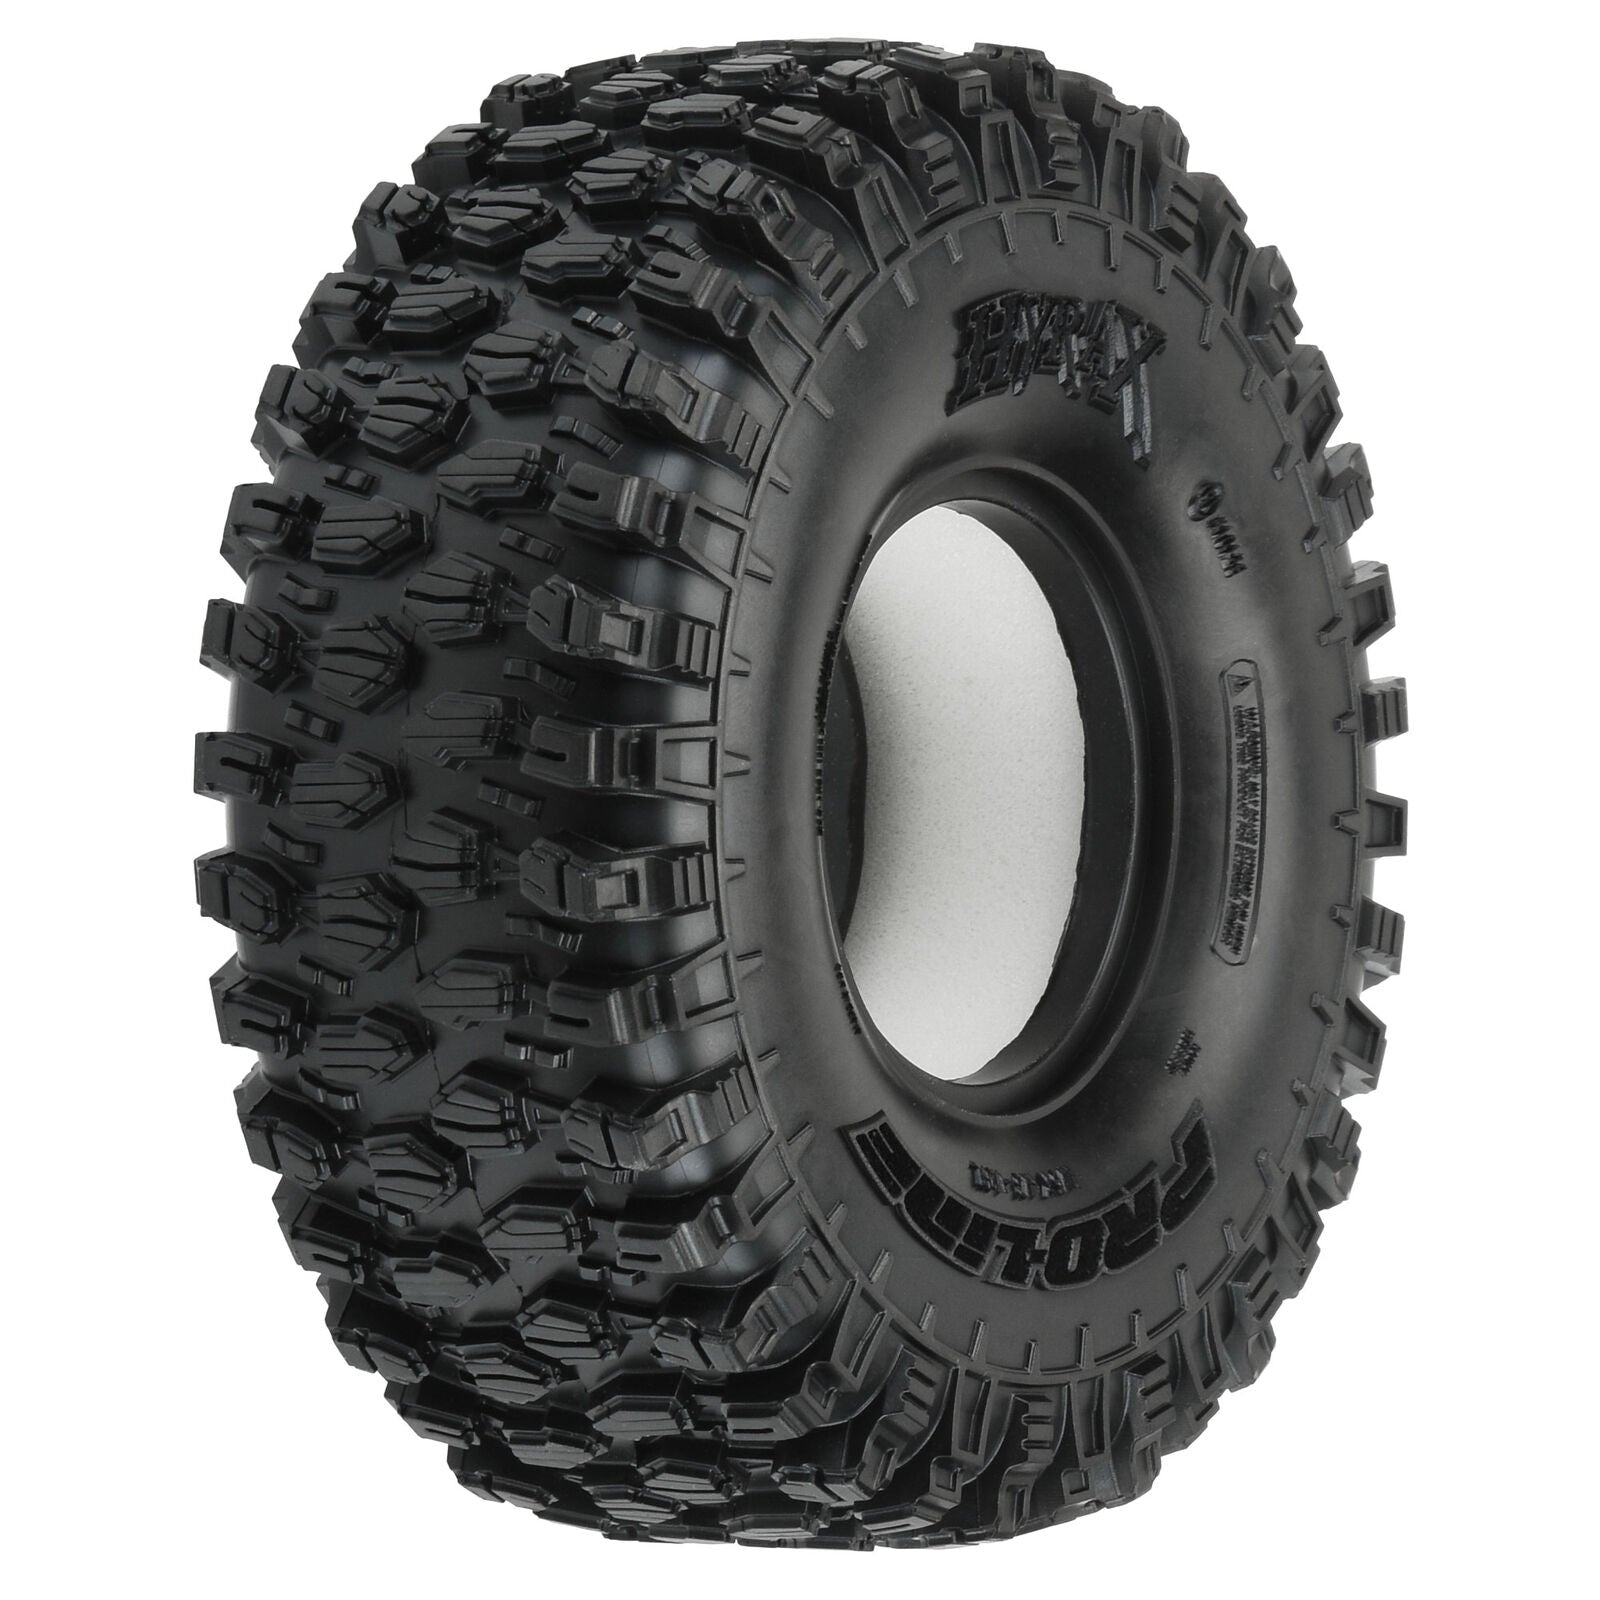 PROLINE 10128-14 Hyrax 1.9 G8 Rock Terrain Tires Front Rear